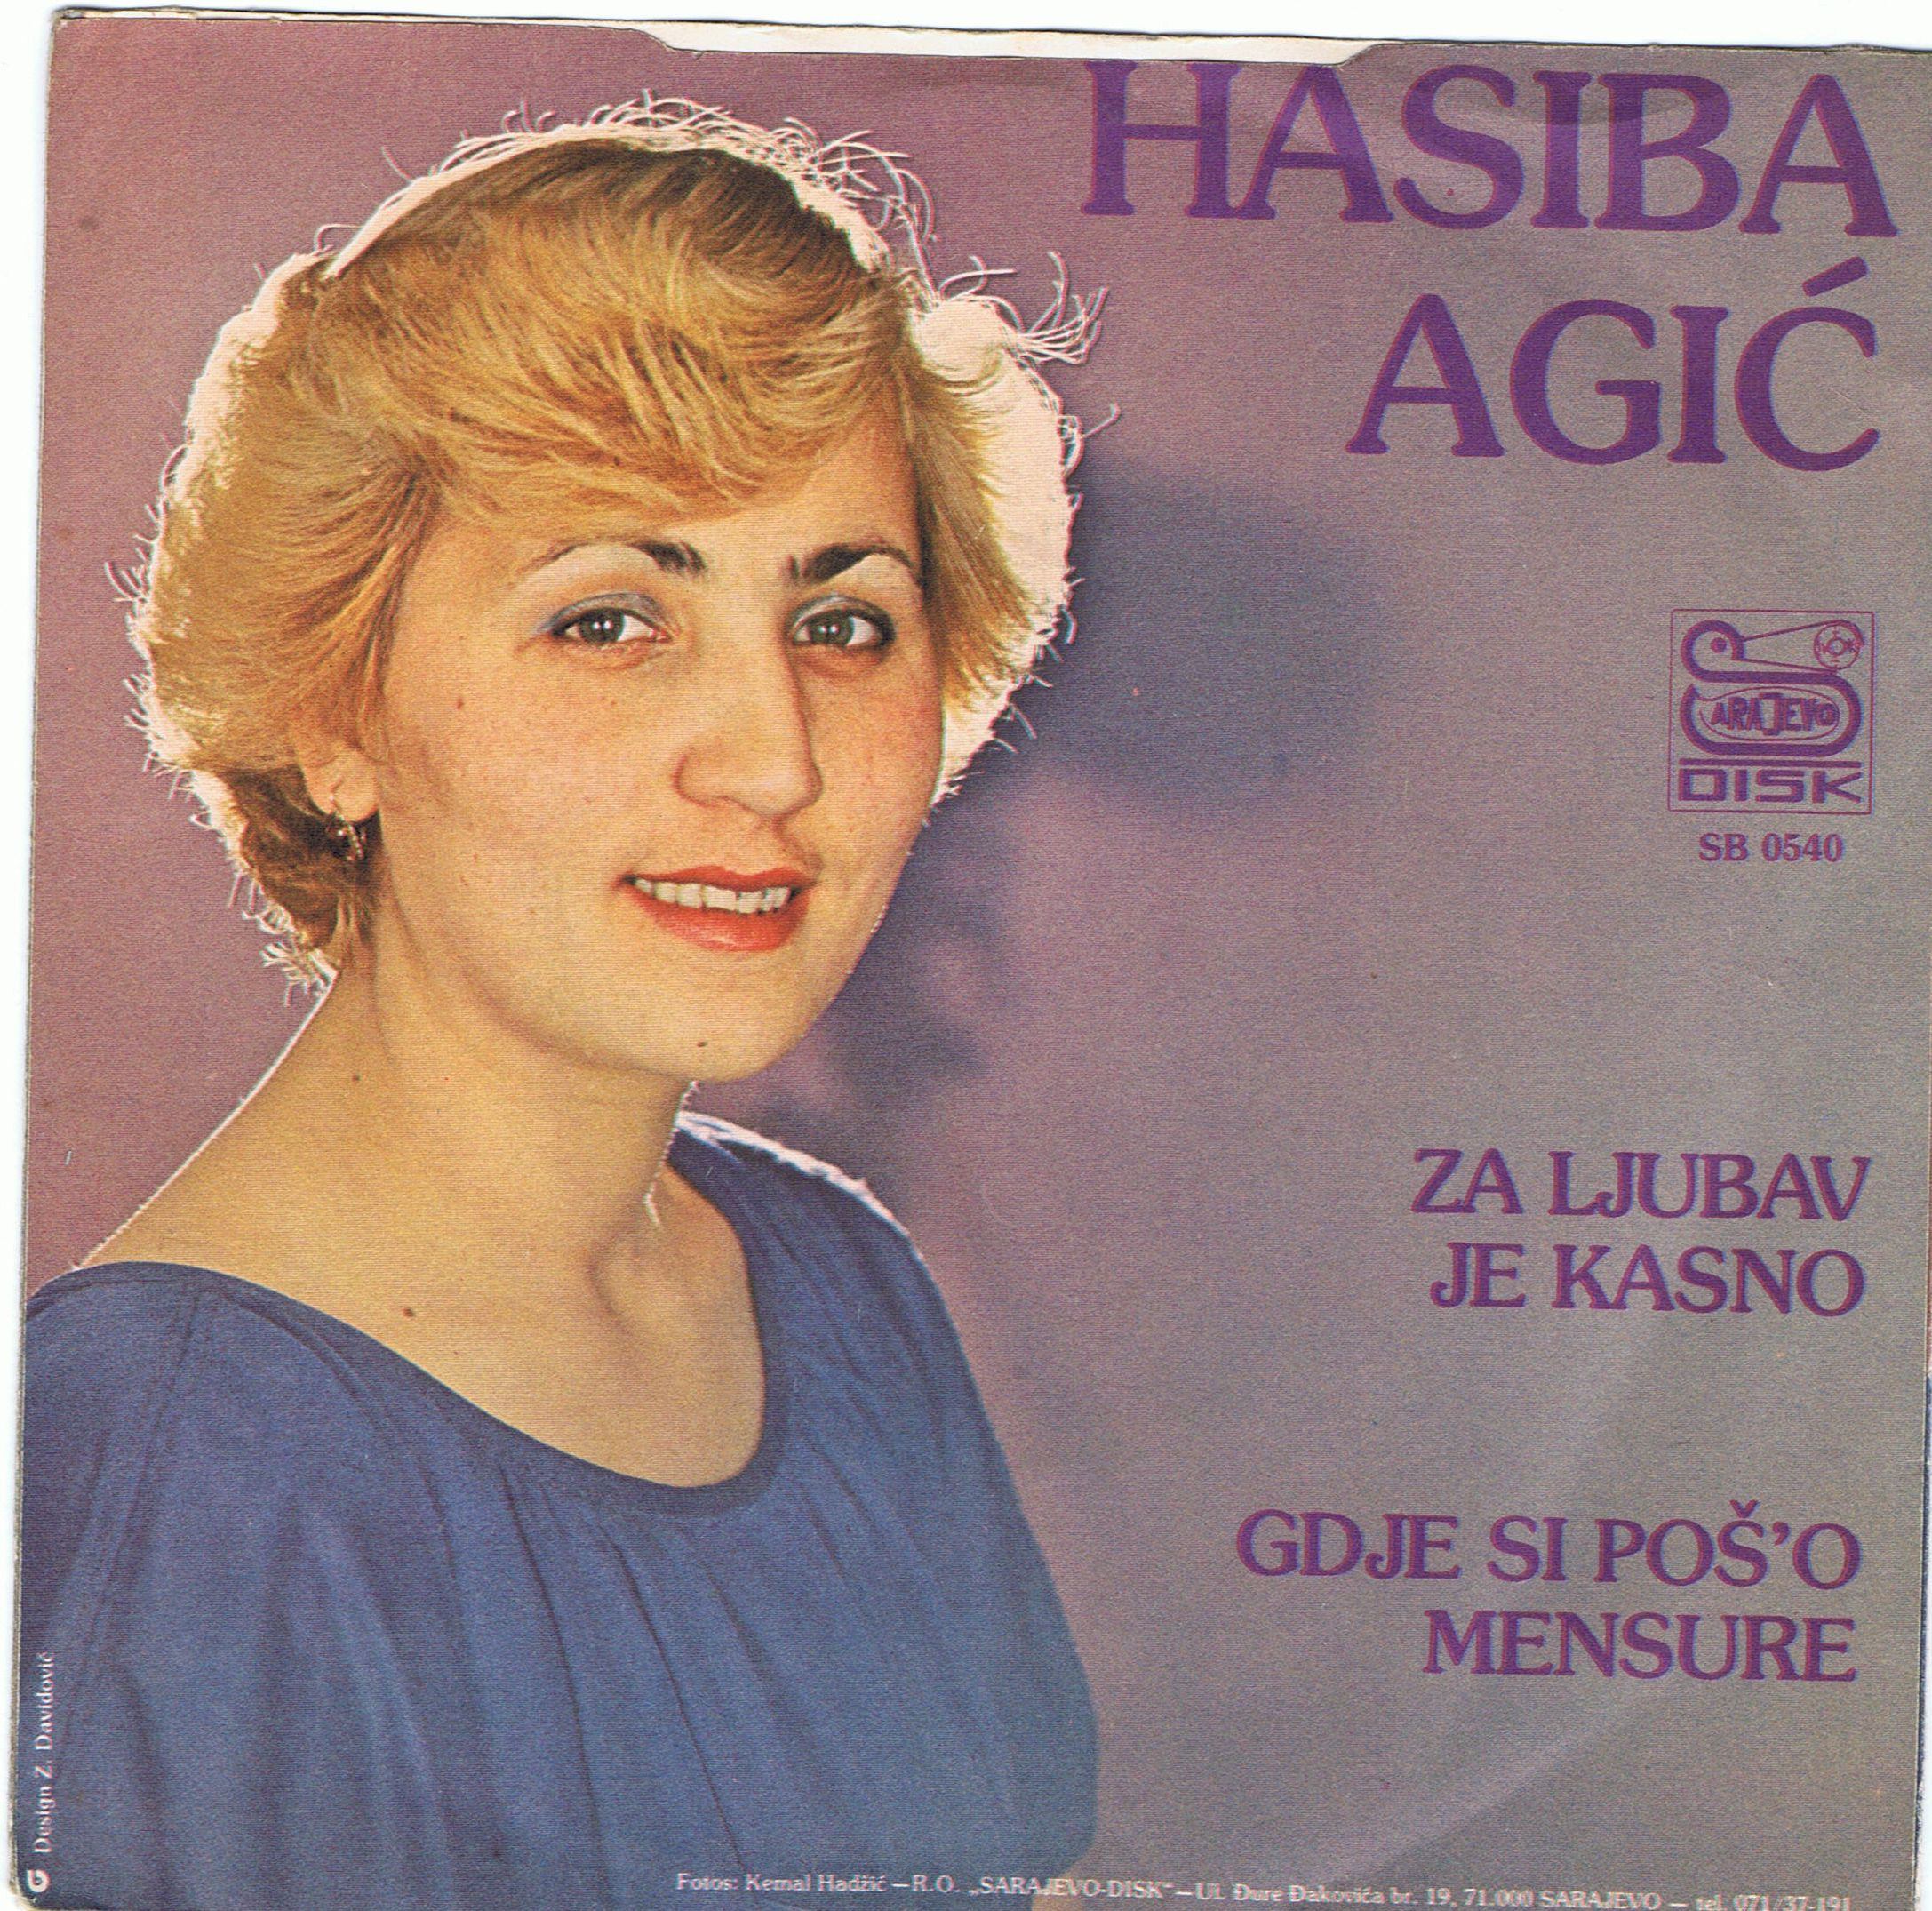 Hasiba Agic 1981 Zadnja 03 06 1981